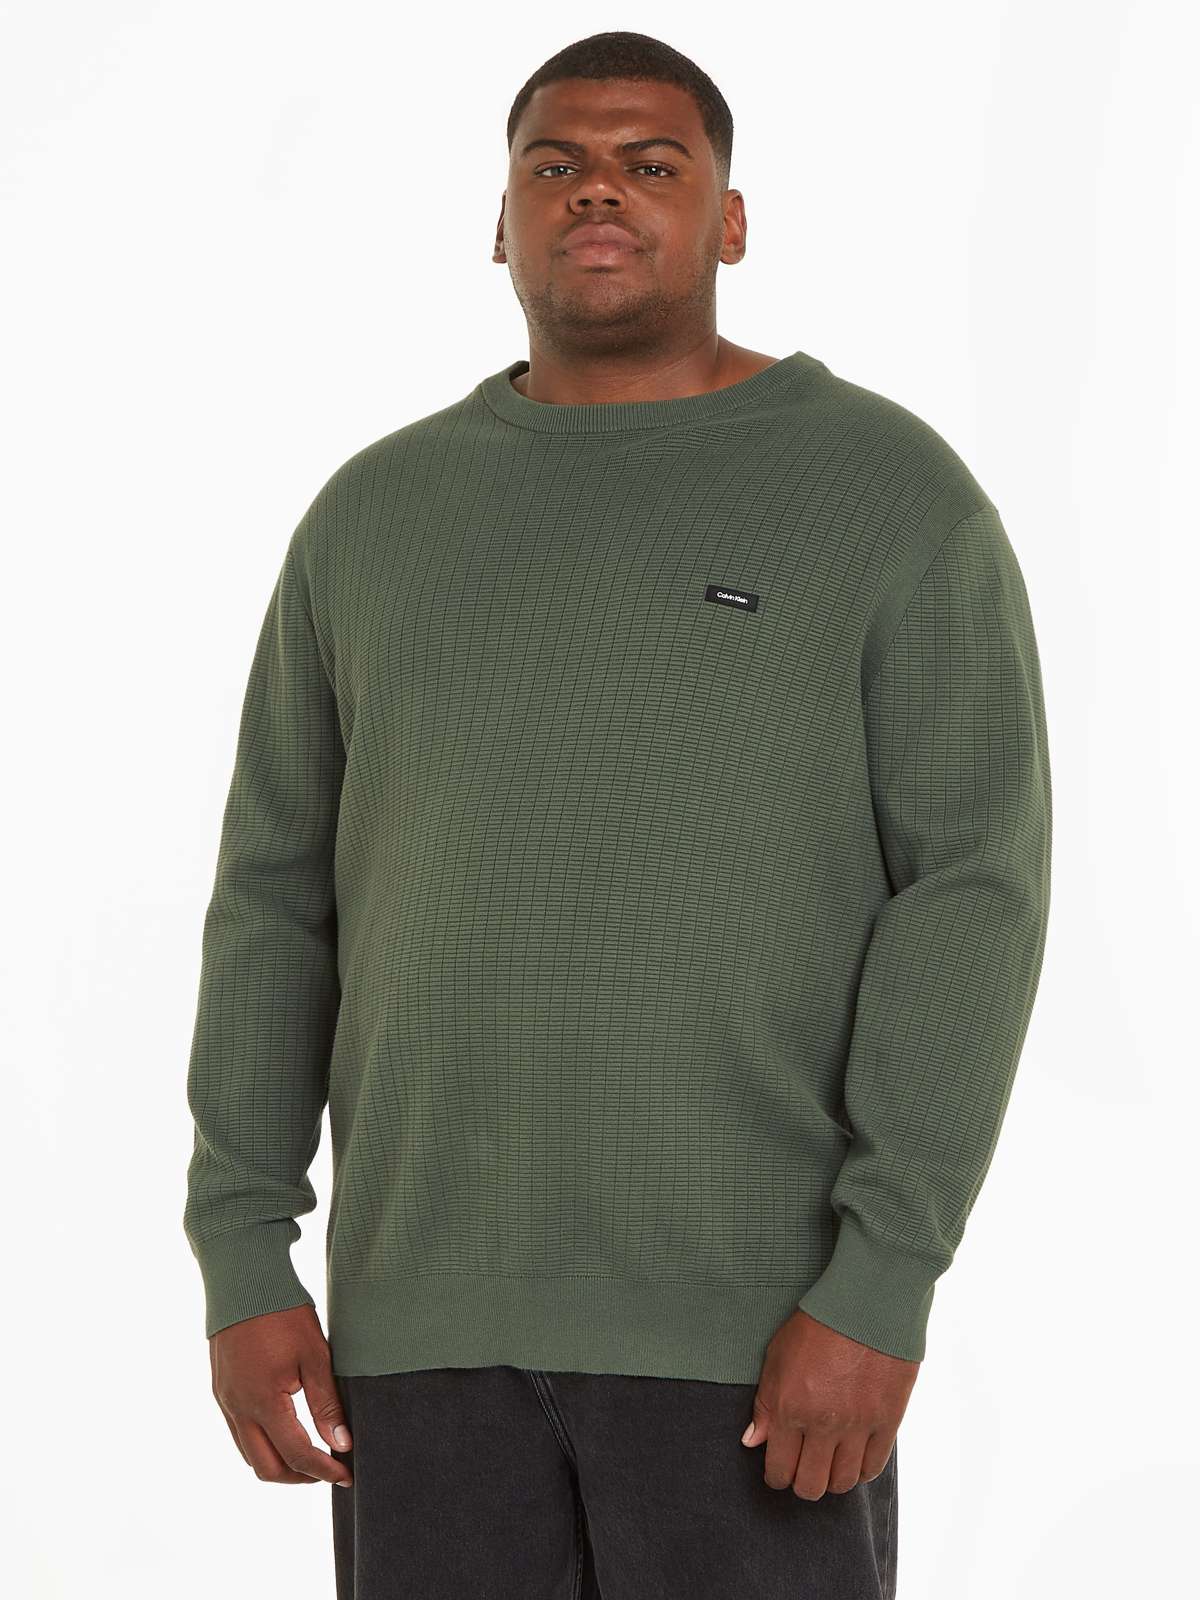 Вязаный свитер с фирменной этикеткой